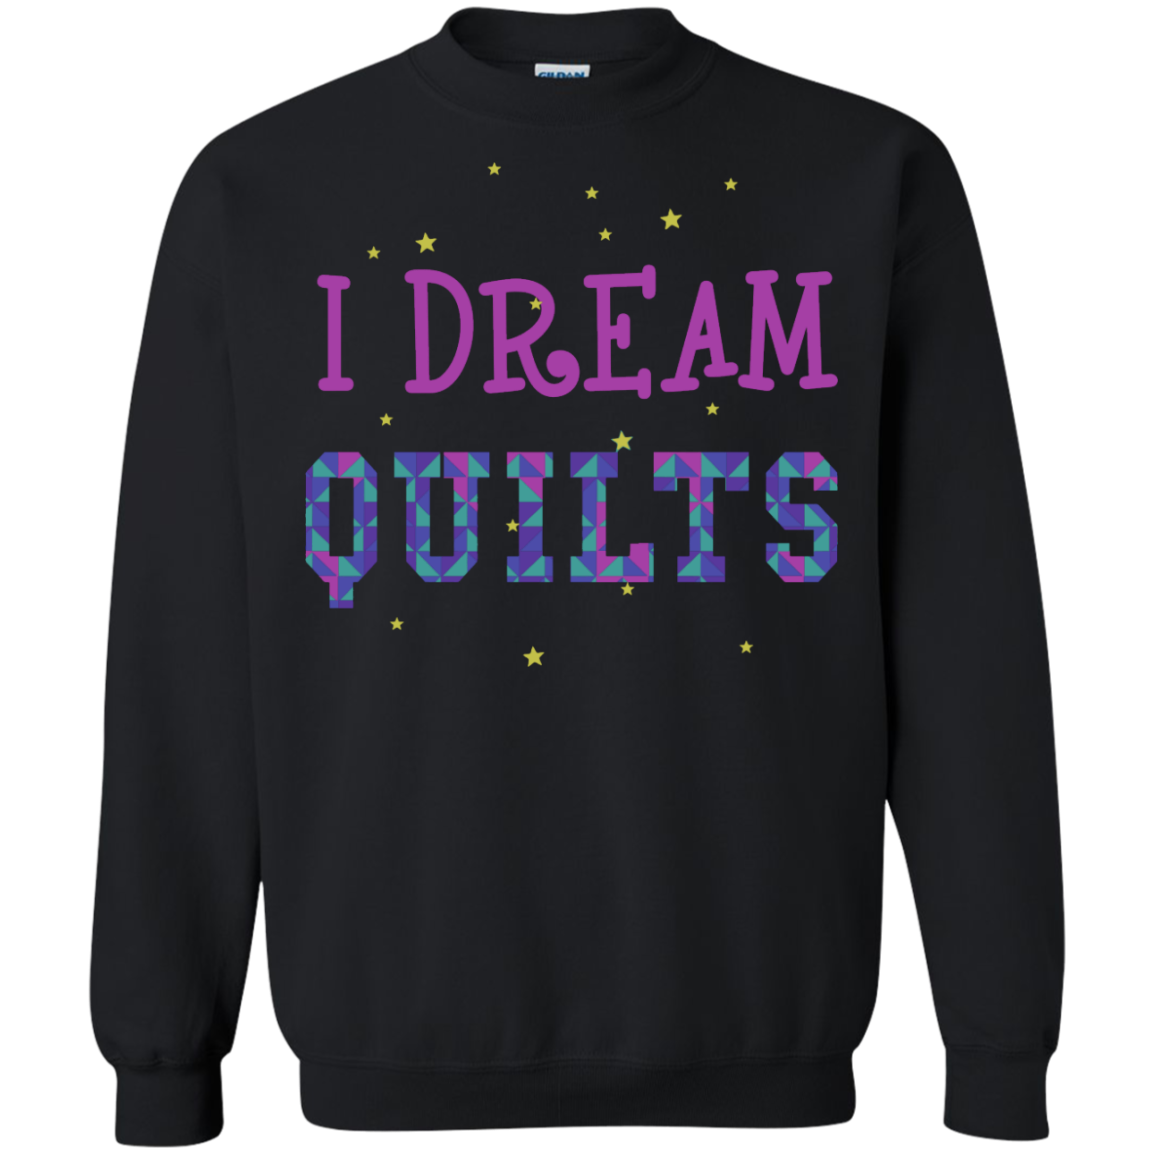 I Dream Quilts Crewneck Sweatshirt - Crafter4Life - 5